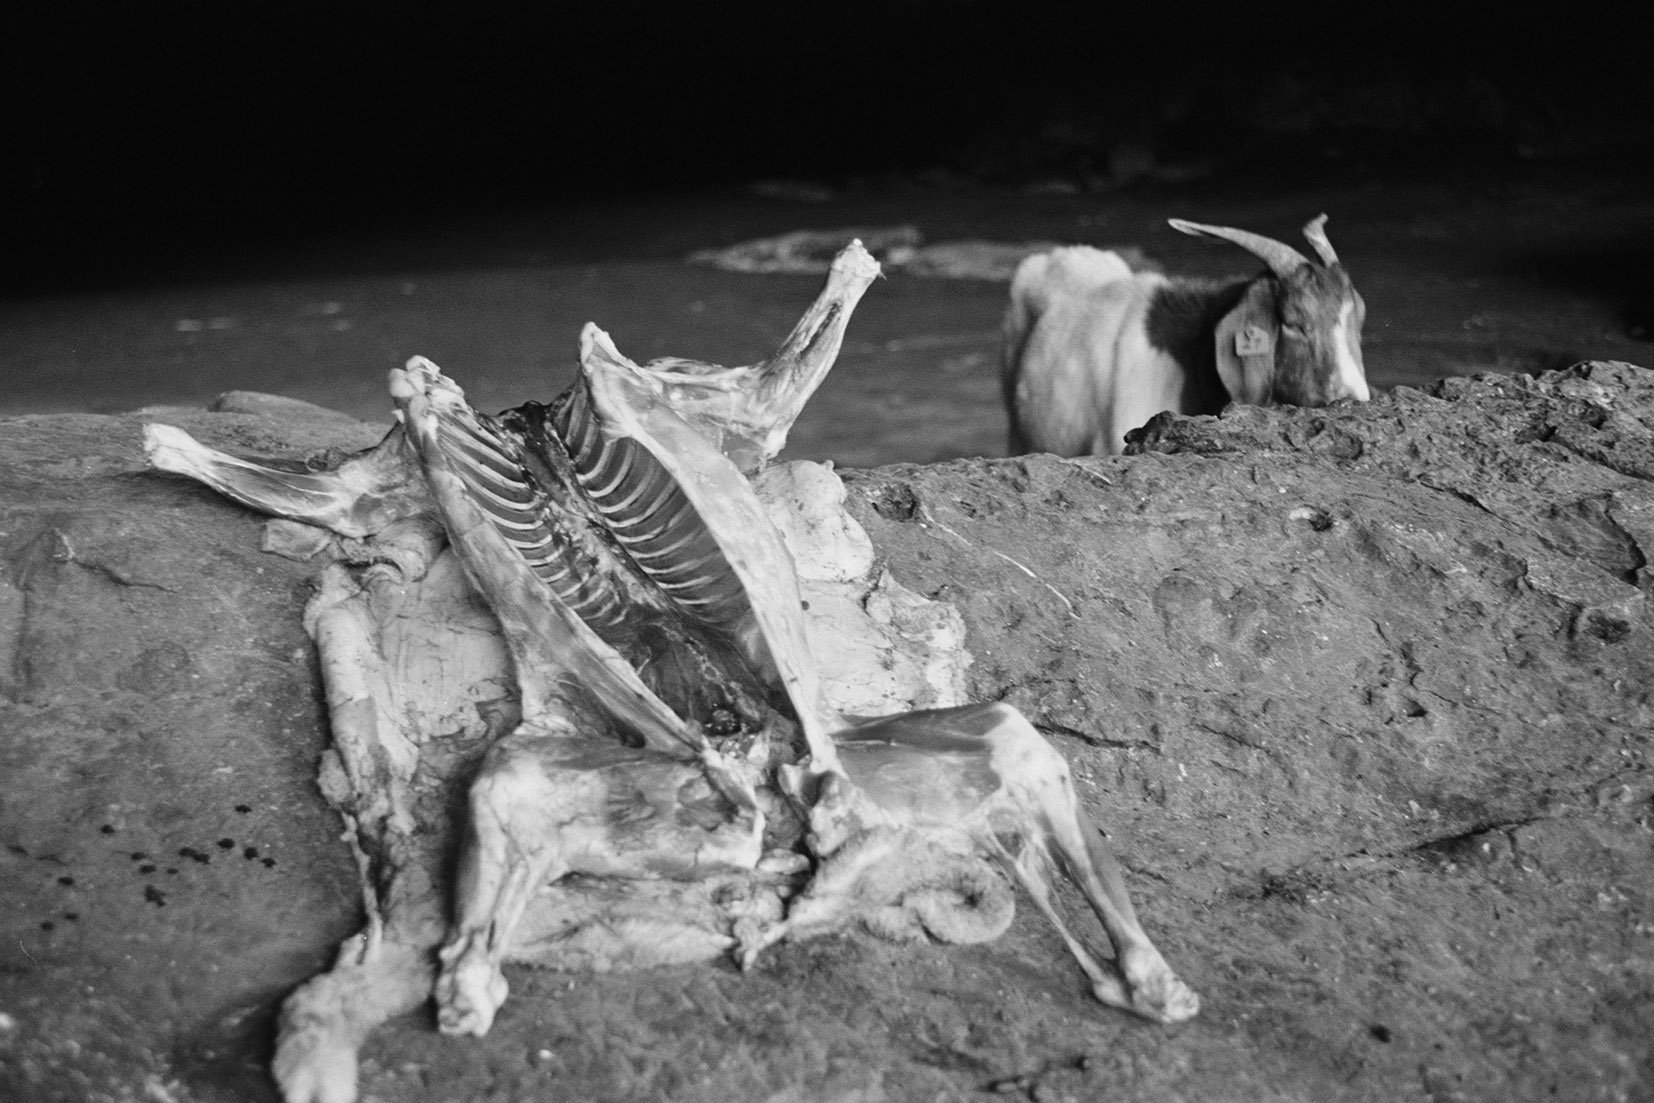  Goat and Carcass, Motouleng Cave, Clarens/ 2006 